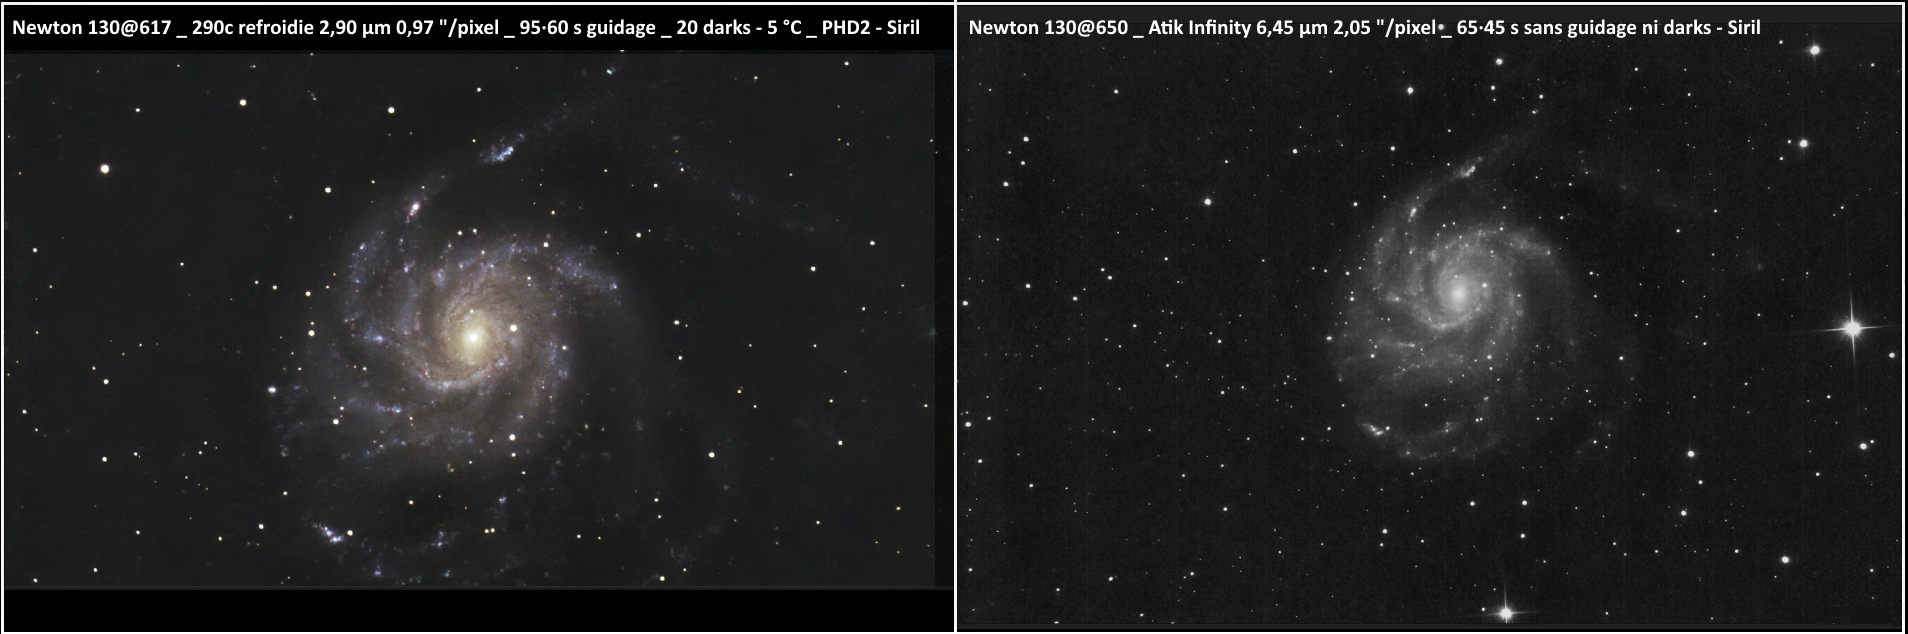 M101 siril 290 vs infinty